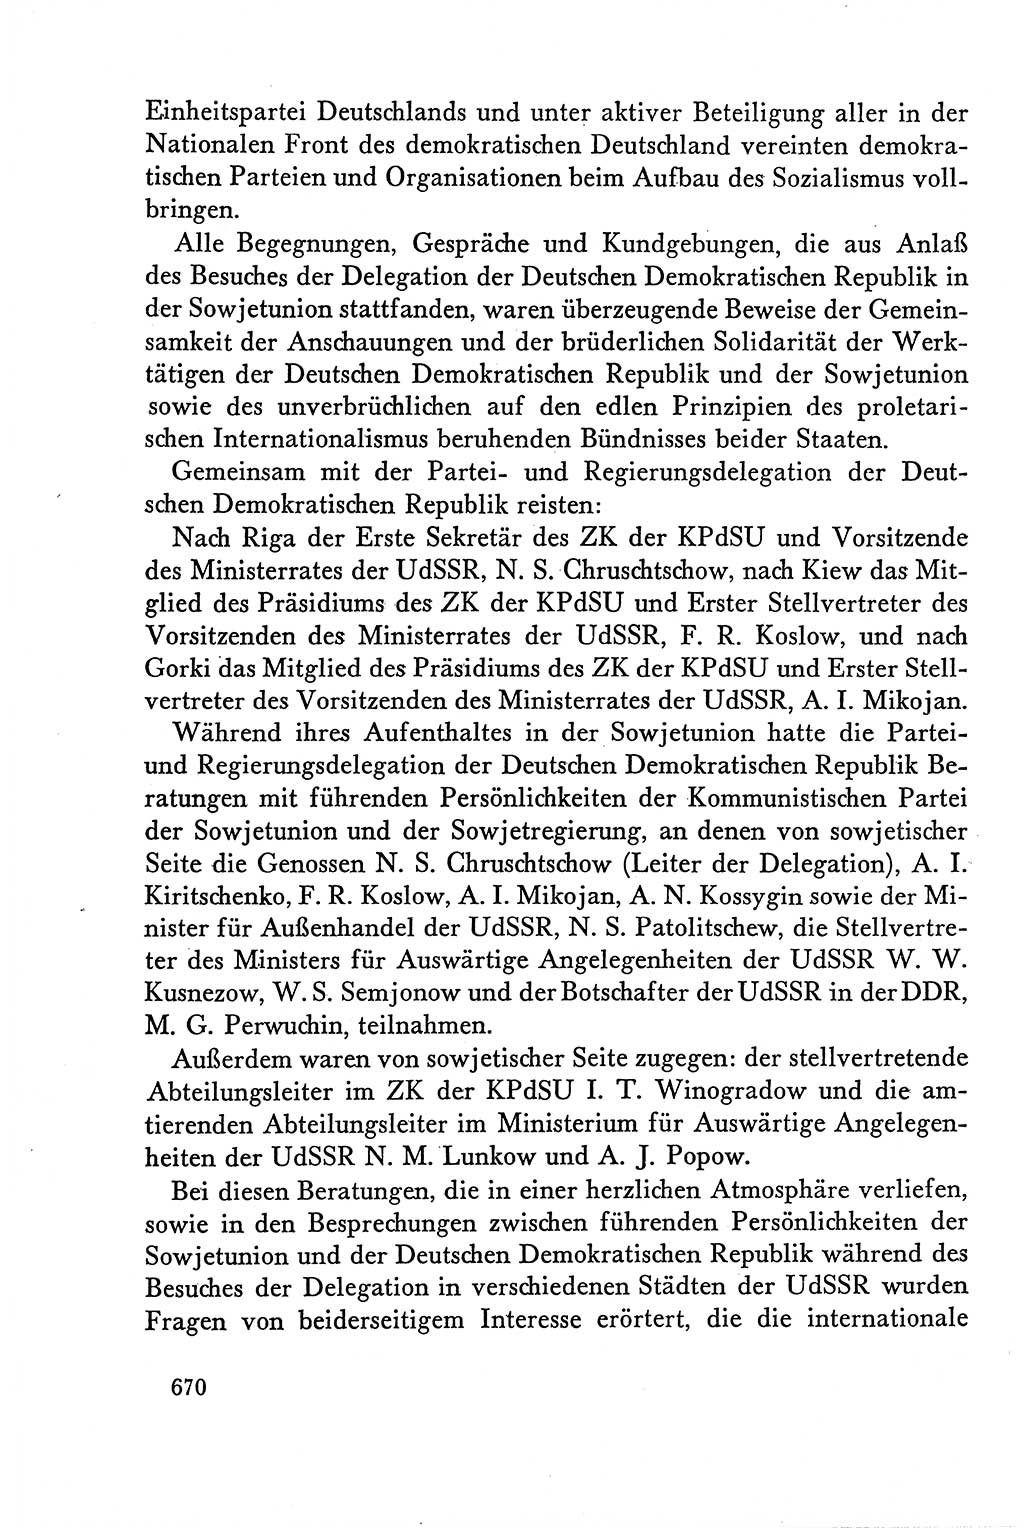 Dokumente der Sozialistischen Einheitspartei Deutschlands (SED) [Deutsche Demokratische Republik (DDR)] 1958-1959, Seite 670 (Dok. SED DDR 1958-1959, S. 670)